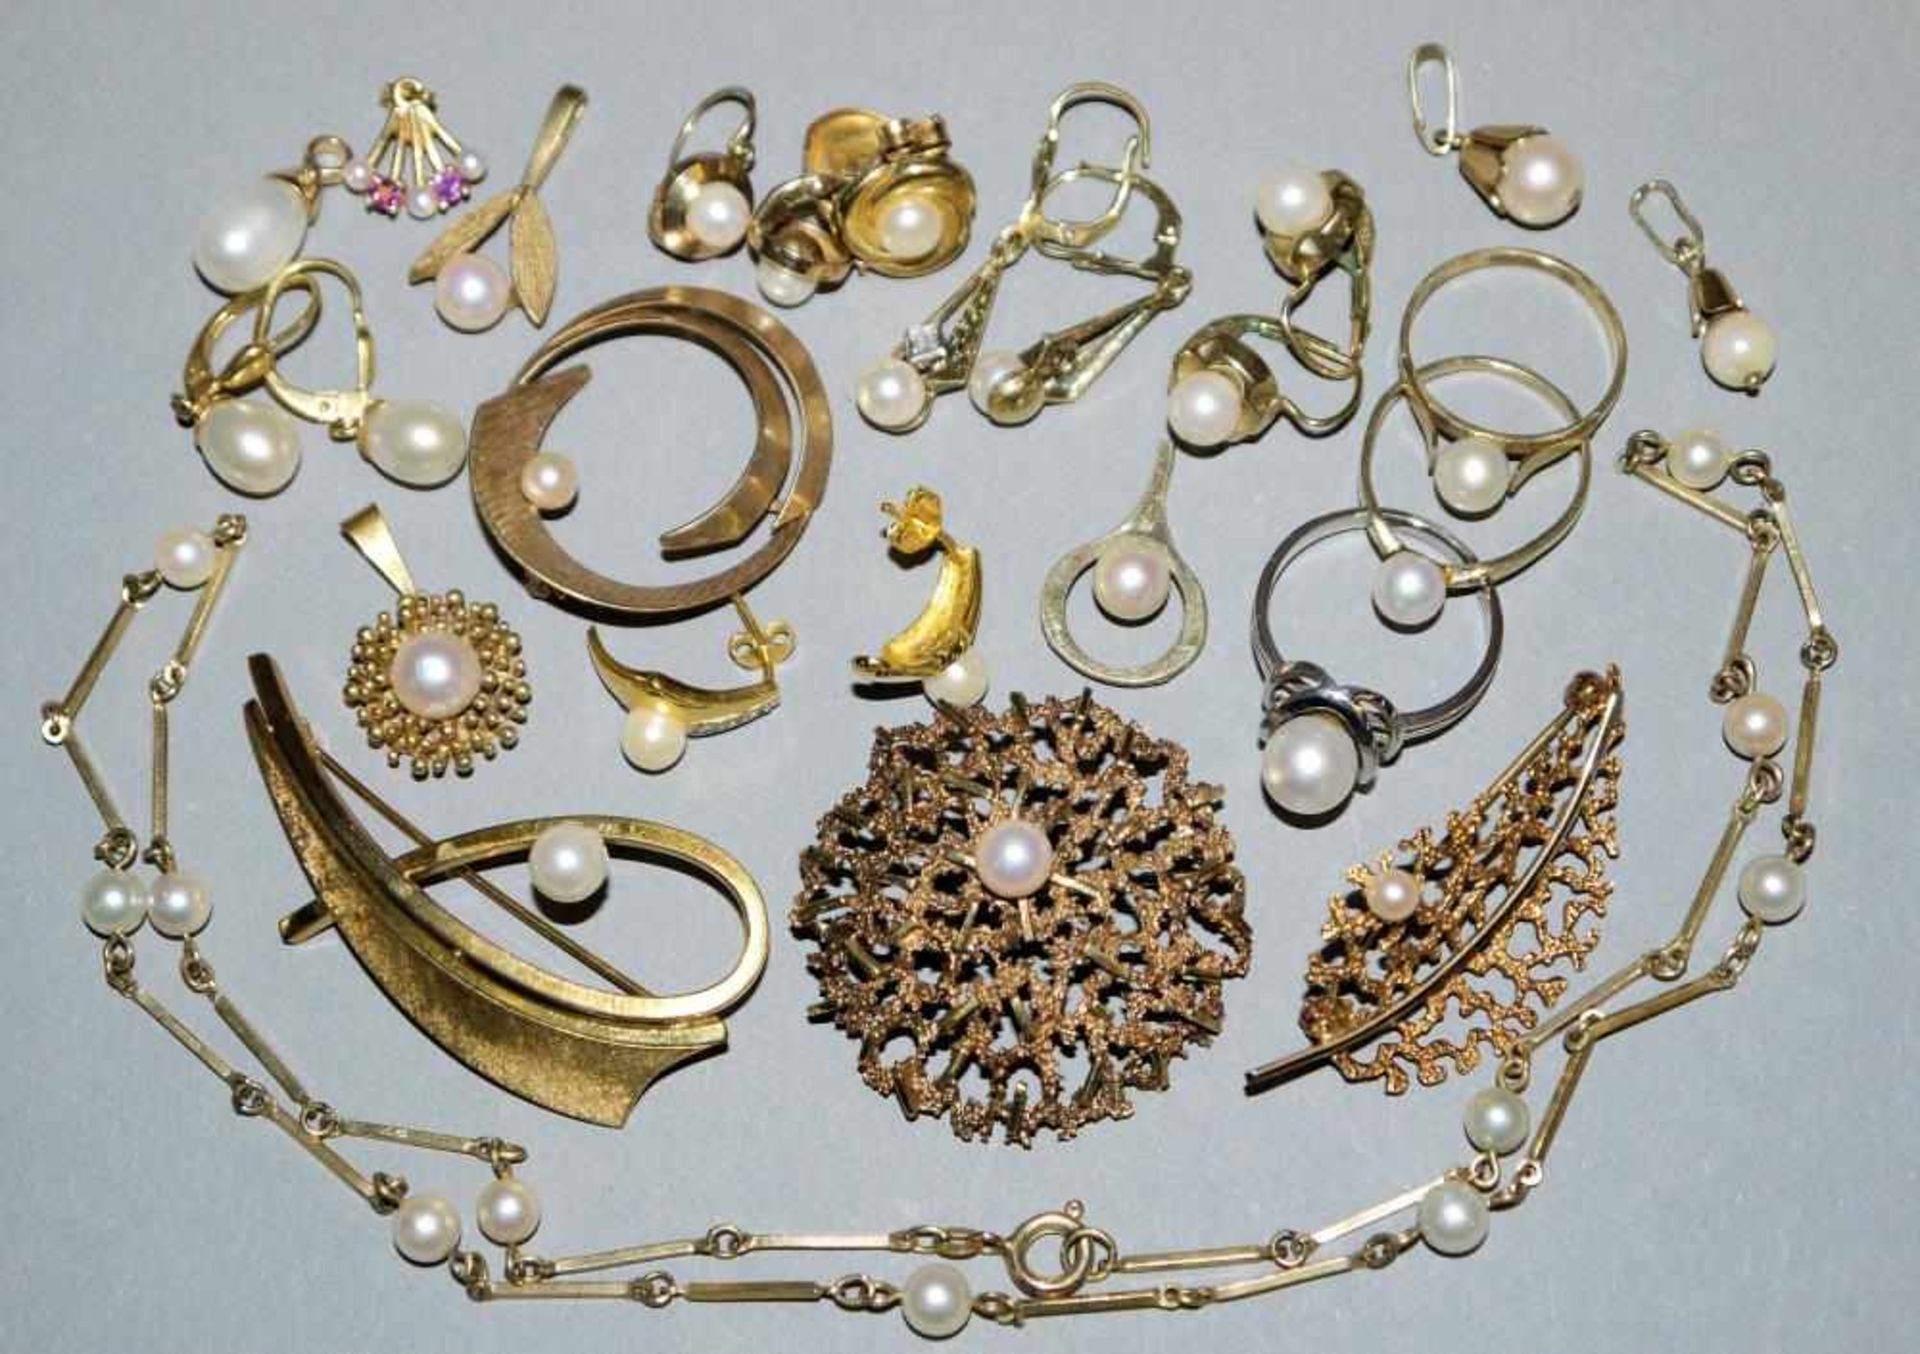 Großes Konvolut Goldschmuck mit Perlenbesatz Perlenring & 2 Anhänger in 14kt Weißgold, besetzt mit